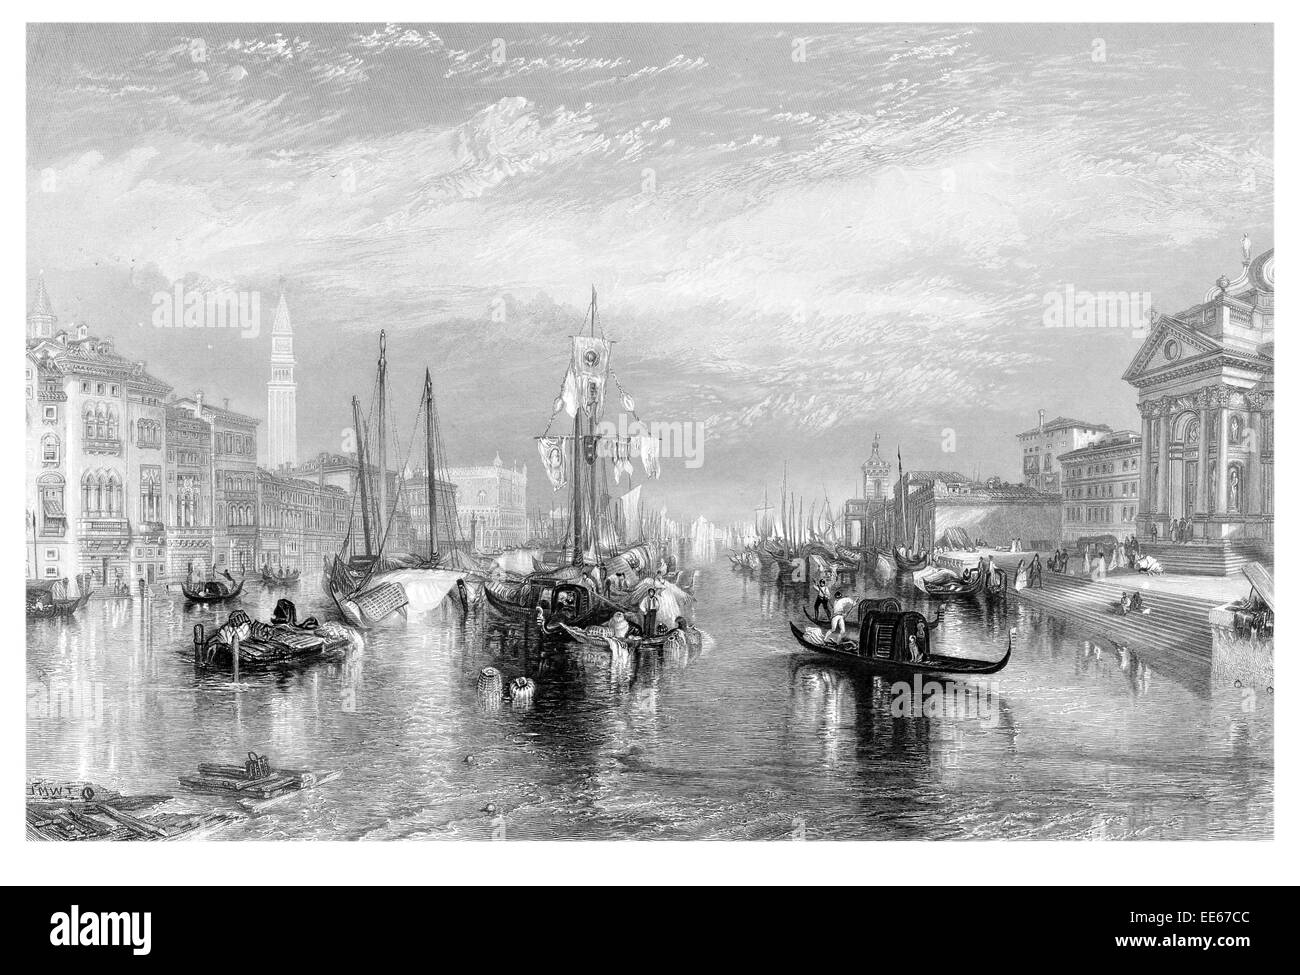 Le Grand canal Joseph Mallord William Turner Venise Italie Venise gondole vaporetti navire marchand commerçant commerce bateau péniche Banque D'Images